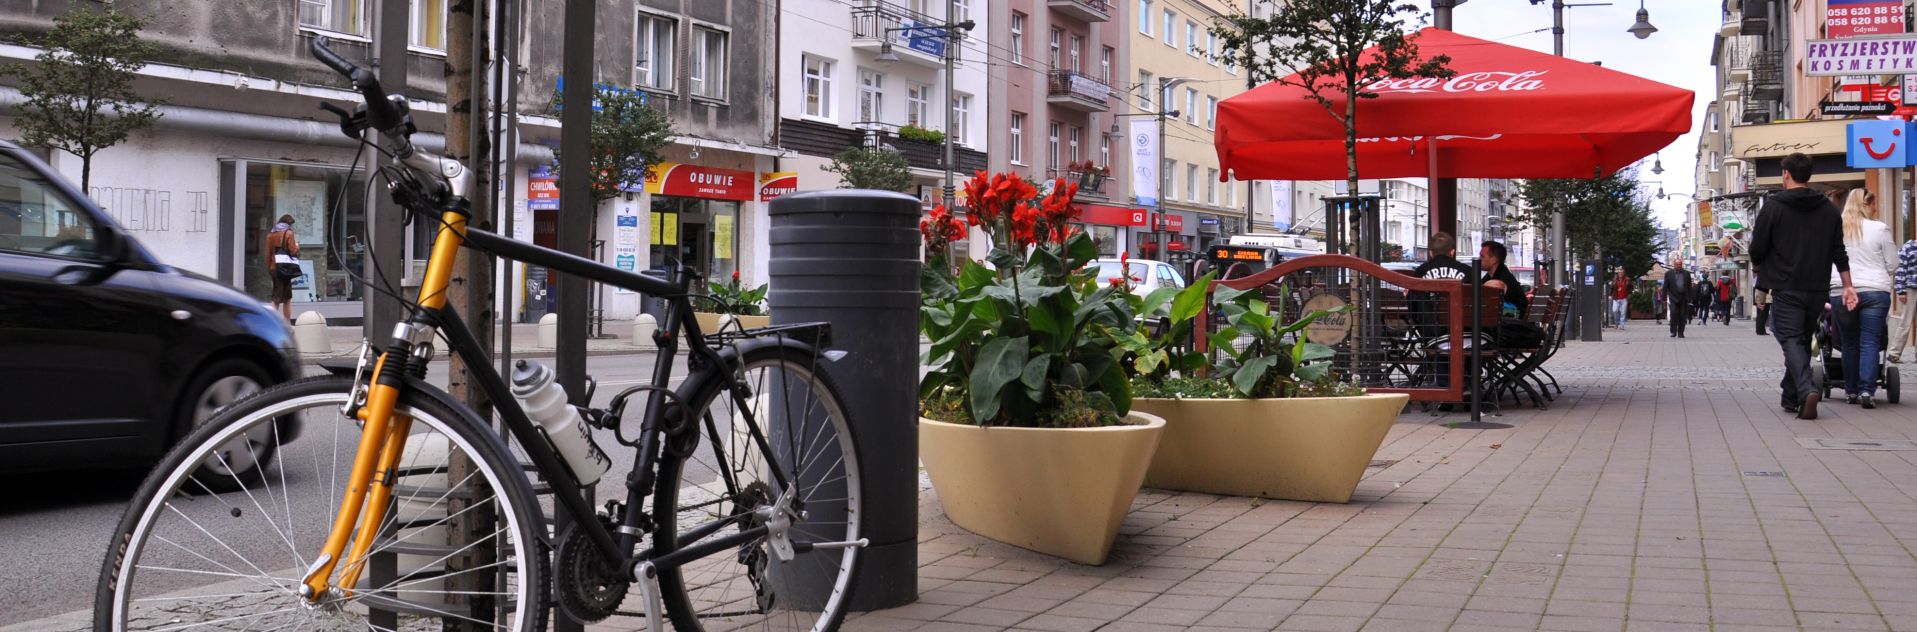 rower miejski na ulicy Gdyni 